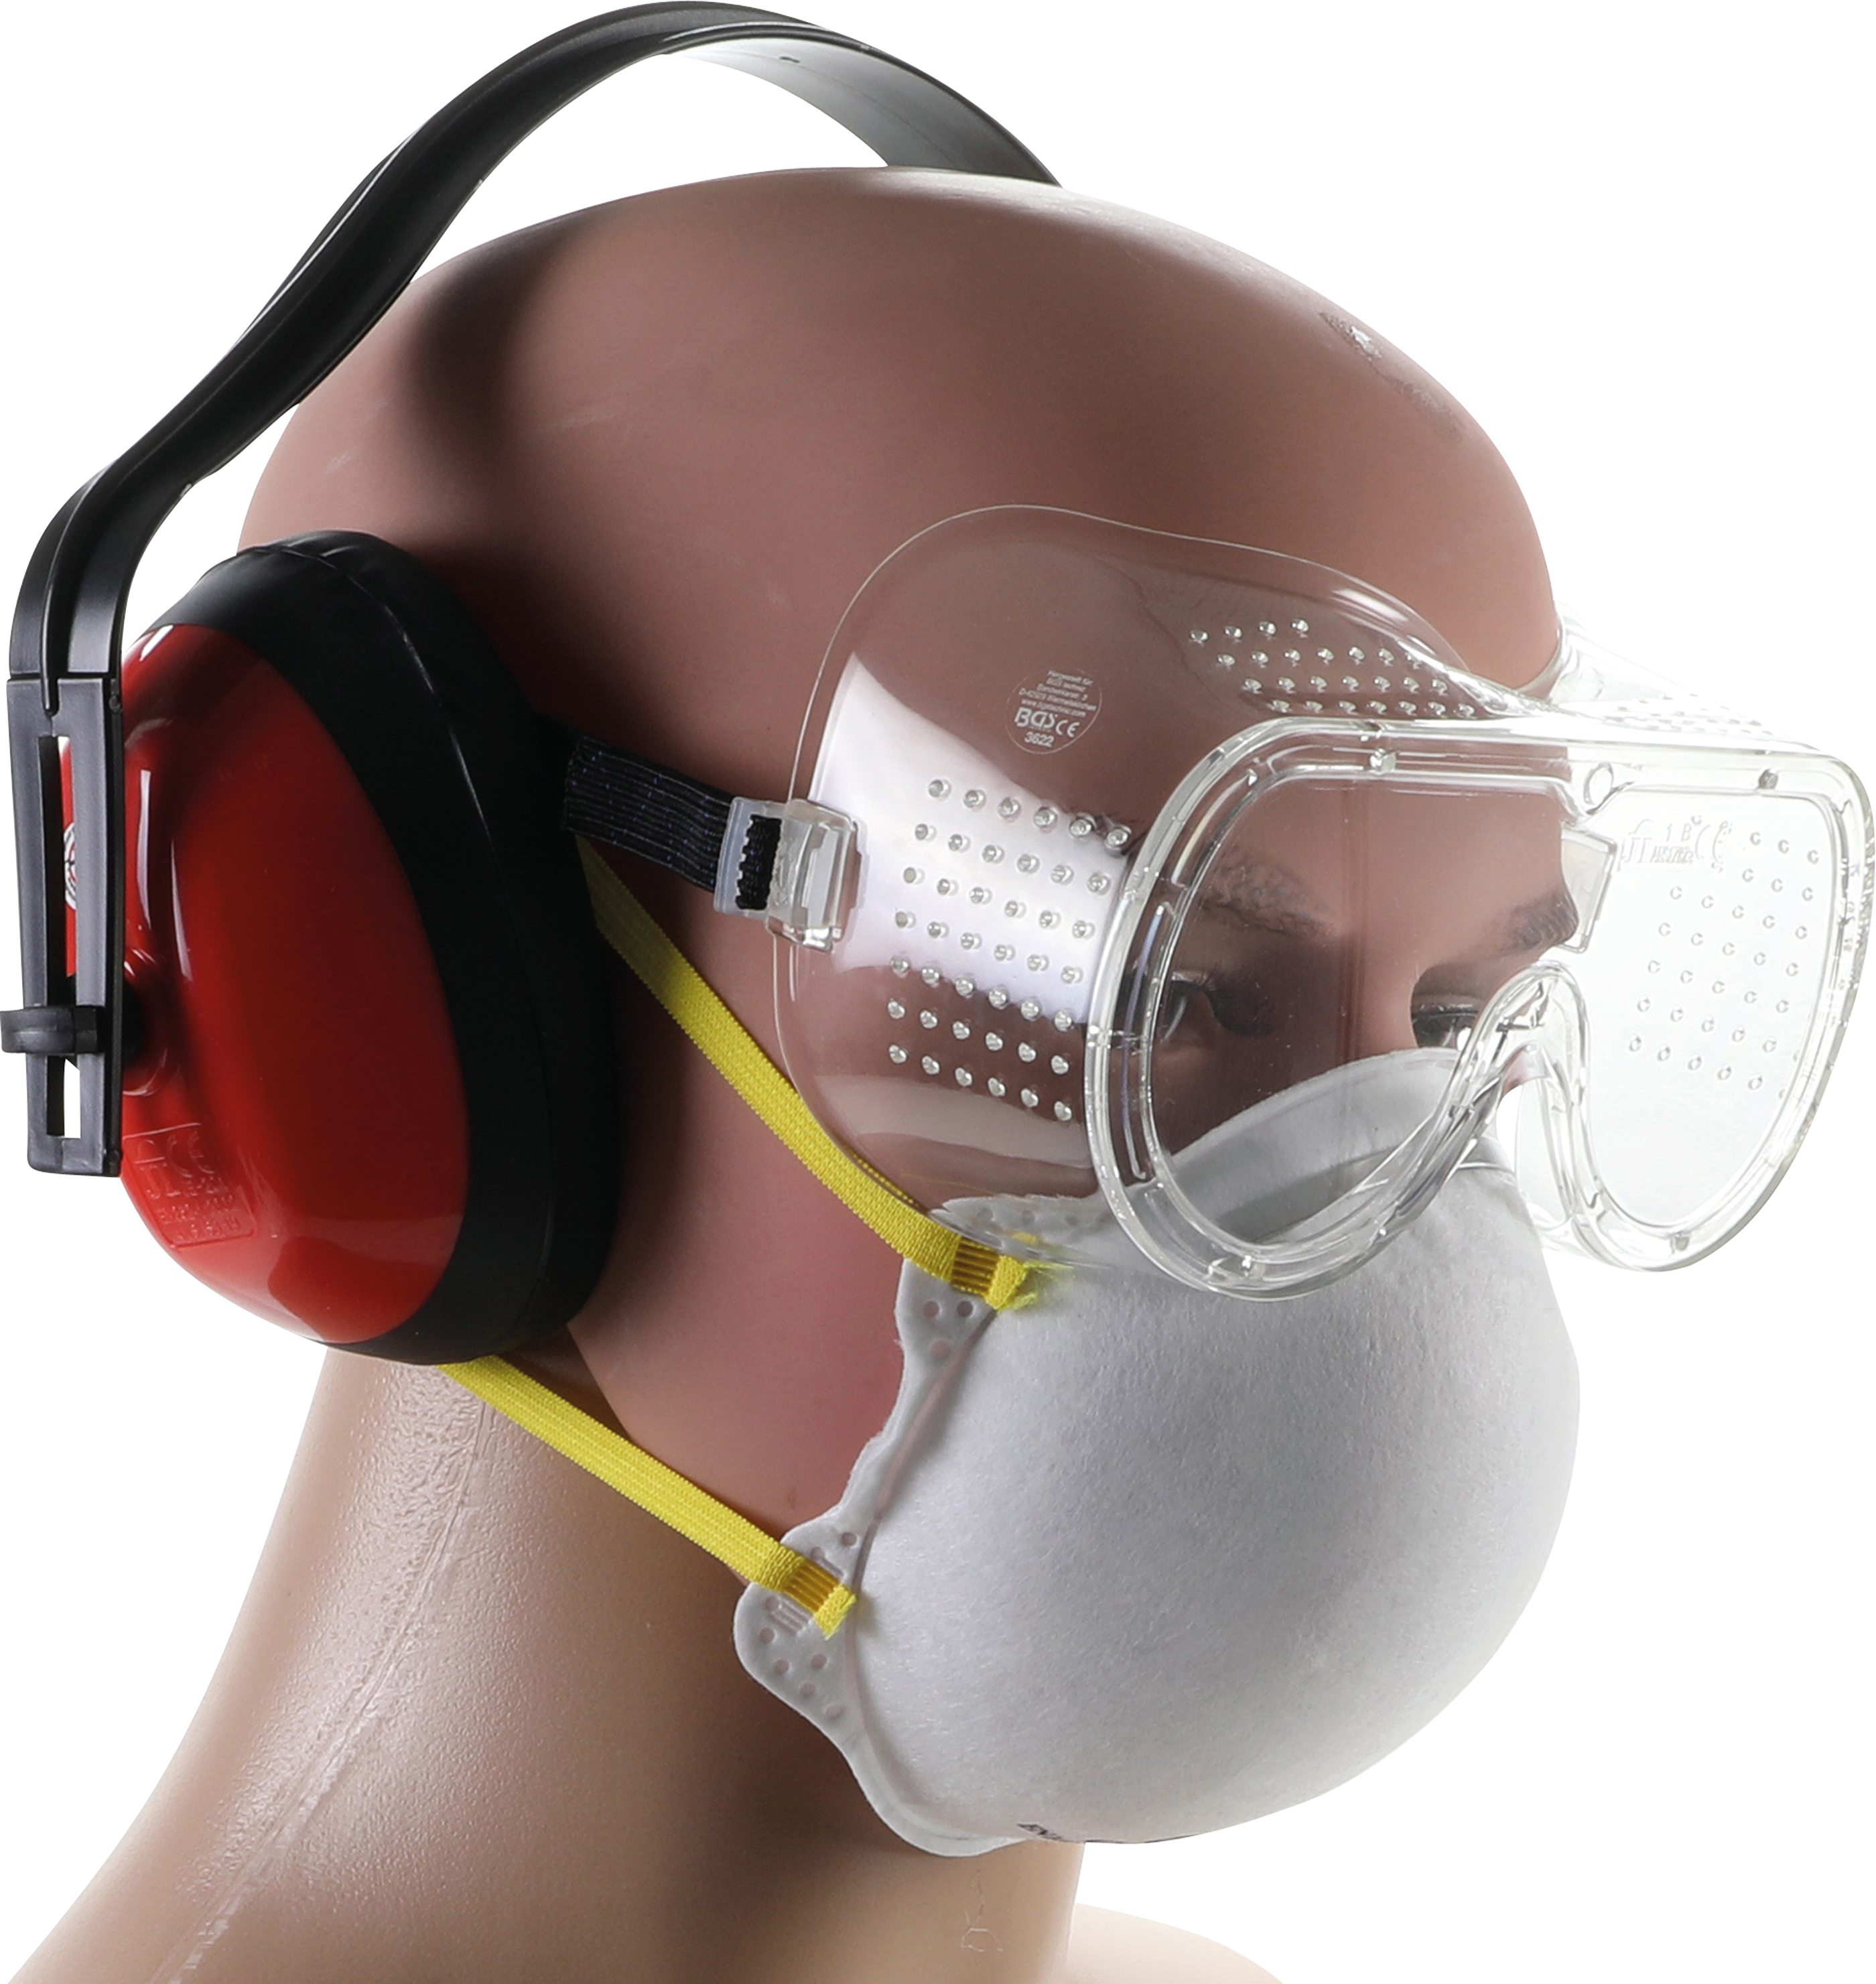 Vollsichtschutzbrille Staubmaske Meister Arbeitsschutz-Set Kapselgehörschutz